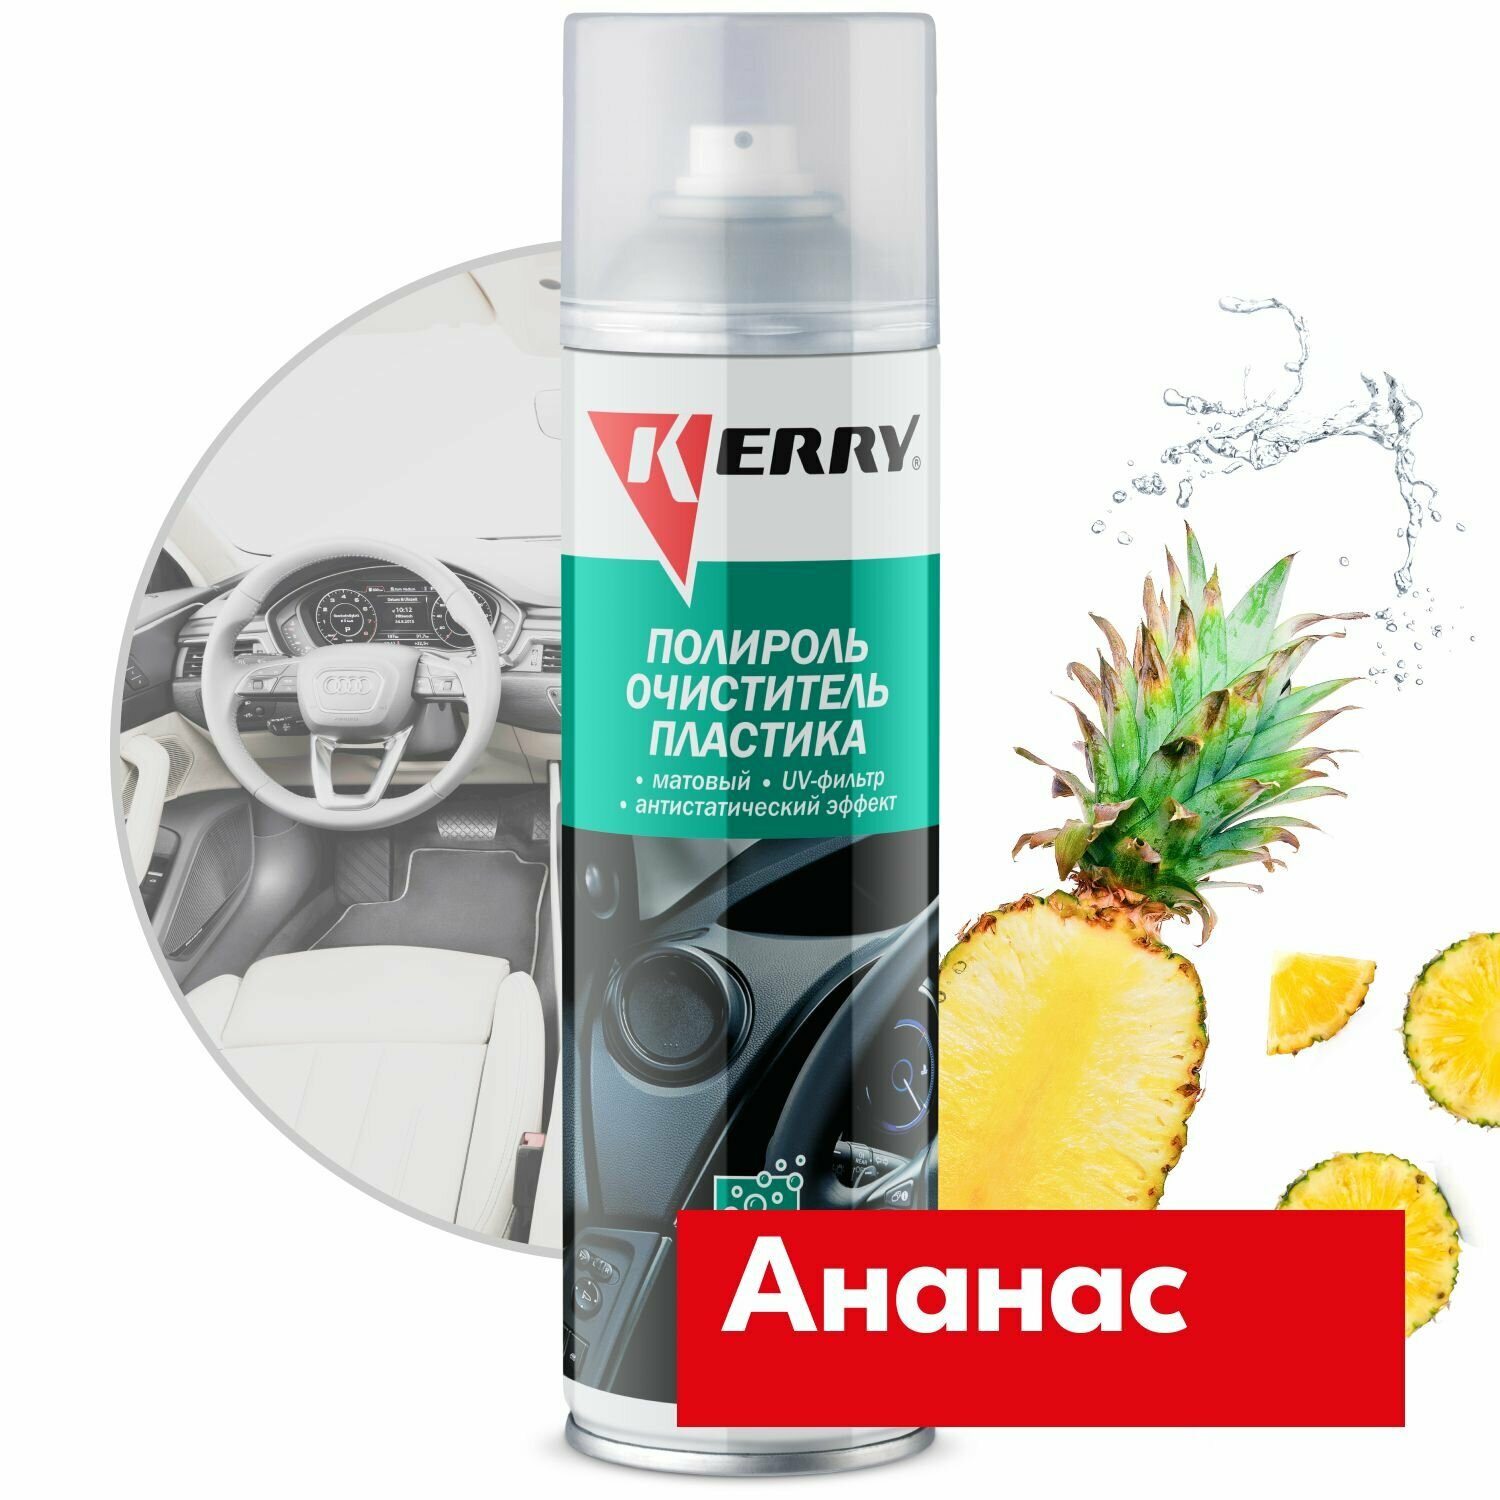 Пенный полироль KERRY - очиститель пластика салона с матовым эффектом запах ананас 335 мл